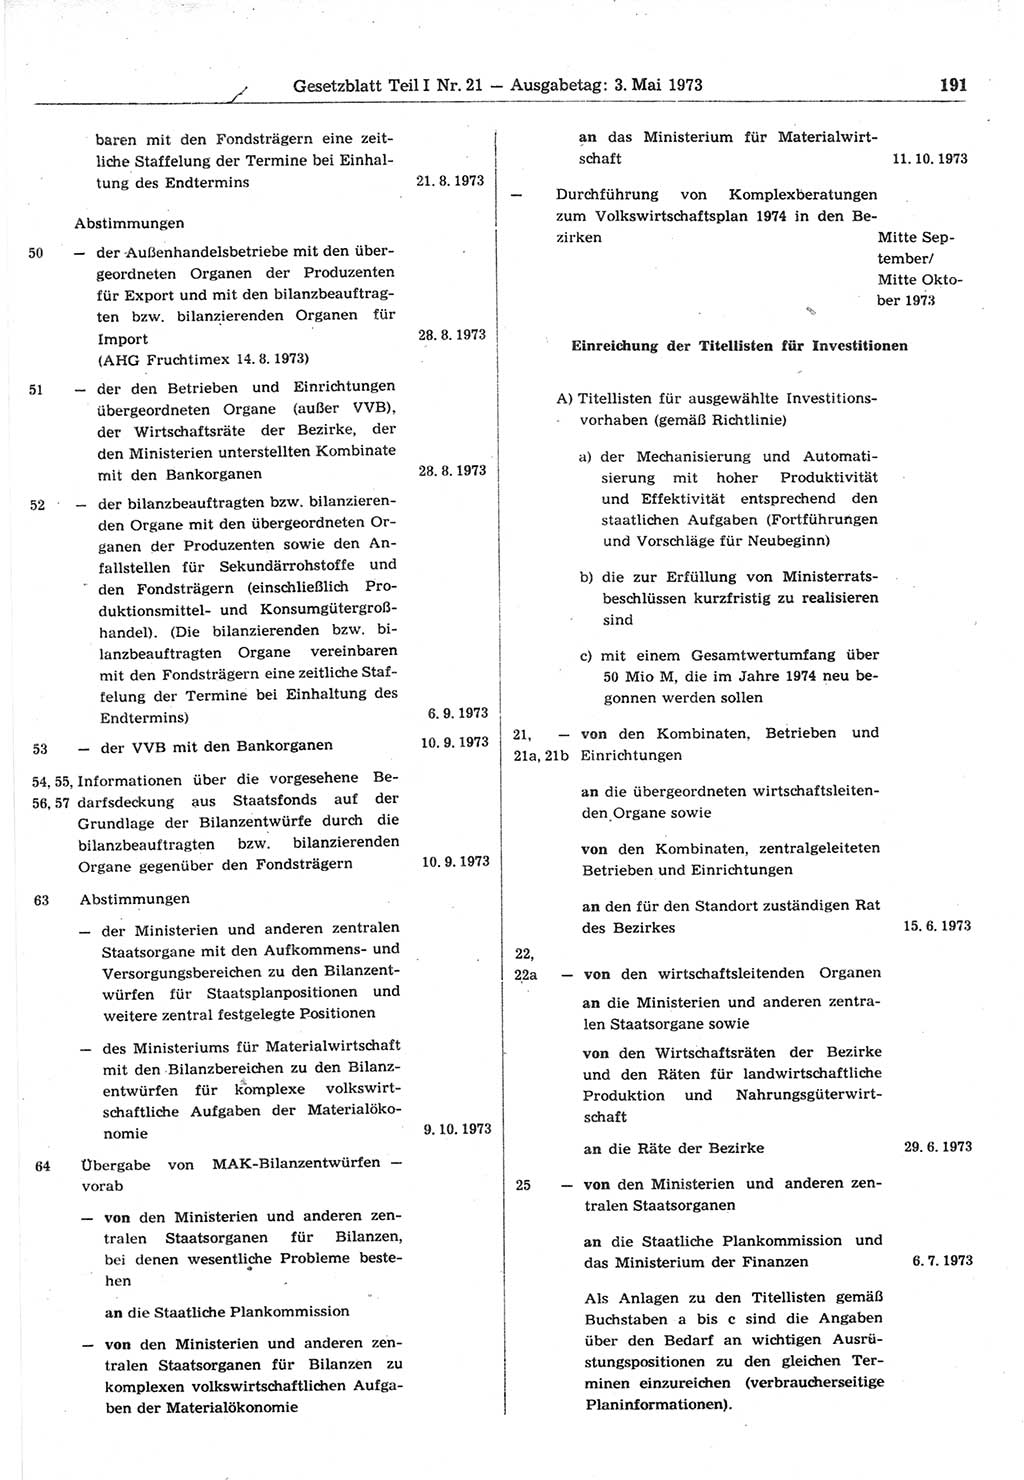 Gesetzblatt (GBl.) der Deutschen Demokratischen Republik (DDR) Teil Ⅰ 1973, Seite 191 (GBl. DDR Ⅰ 1973, S. 191)